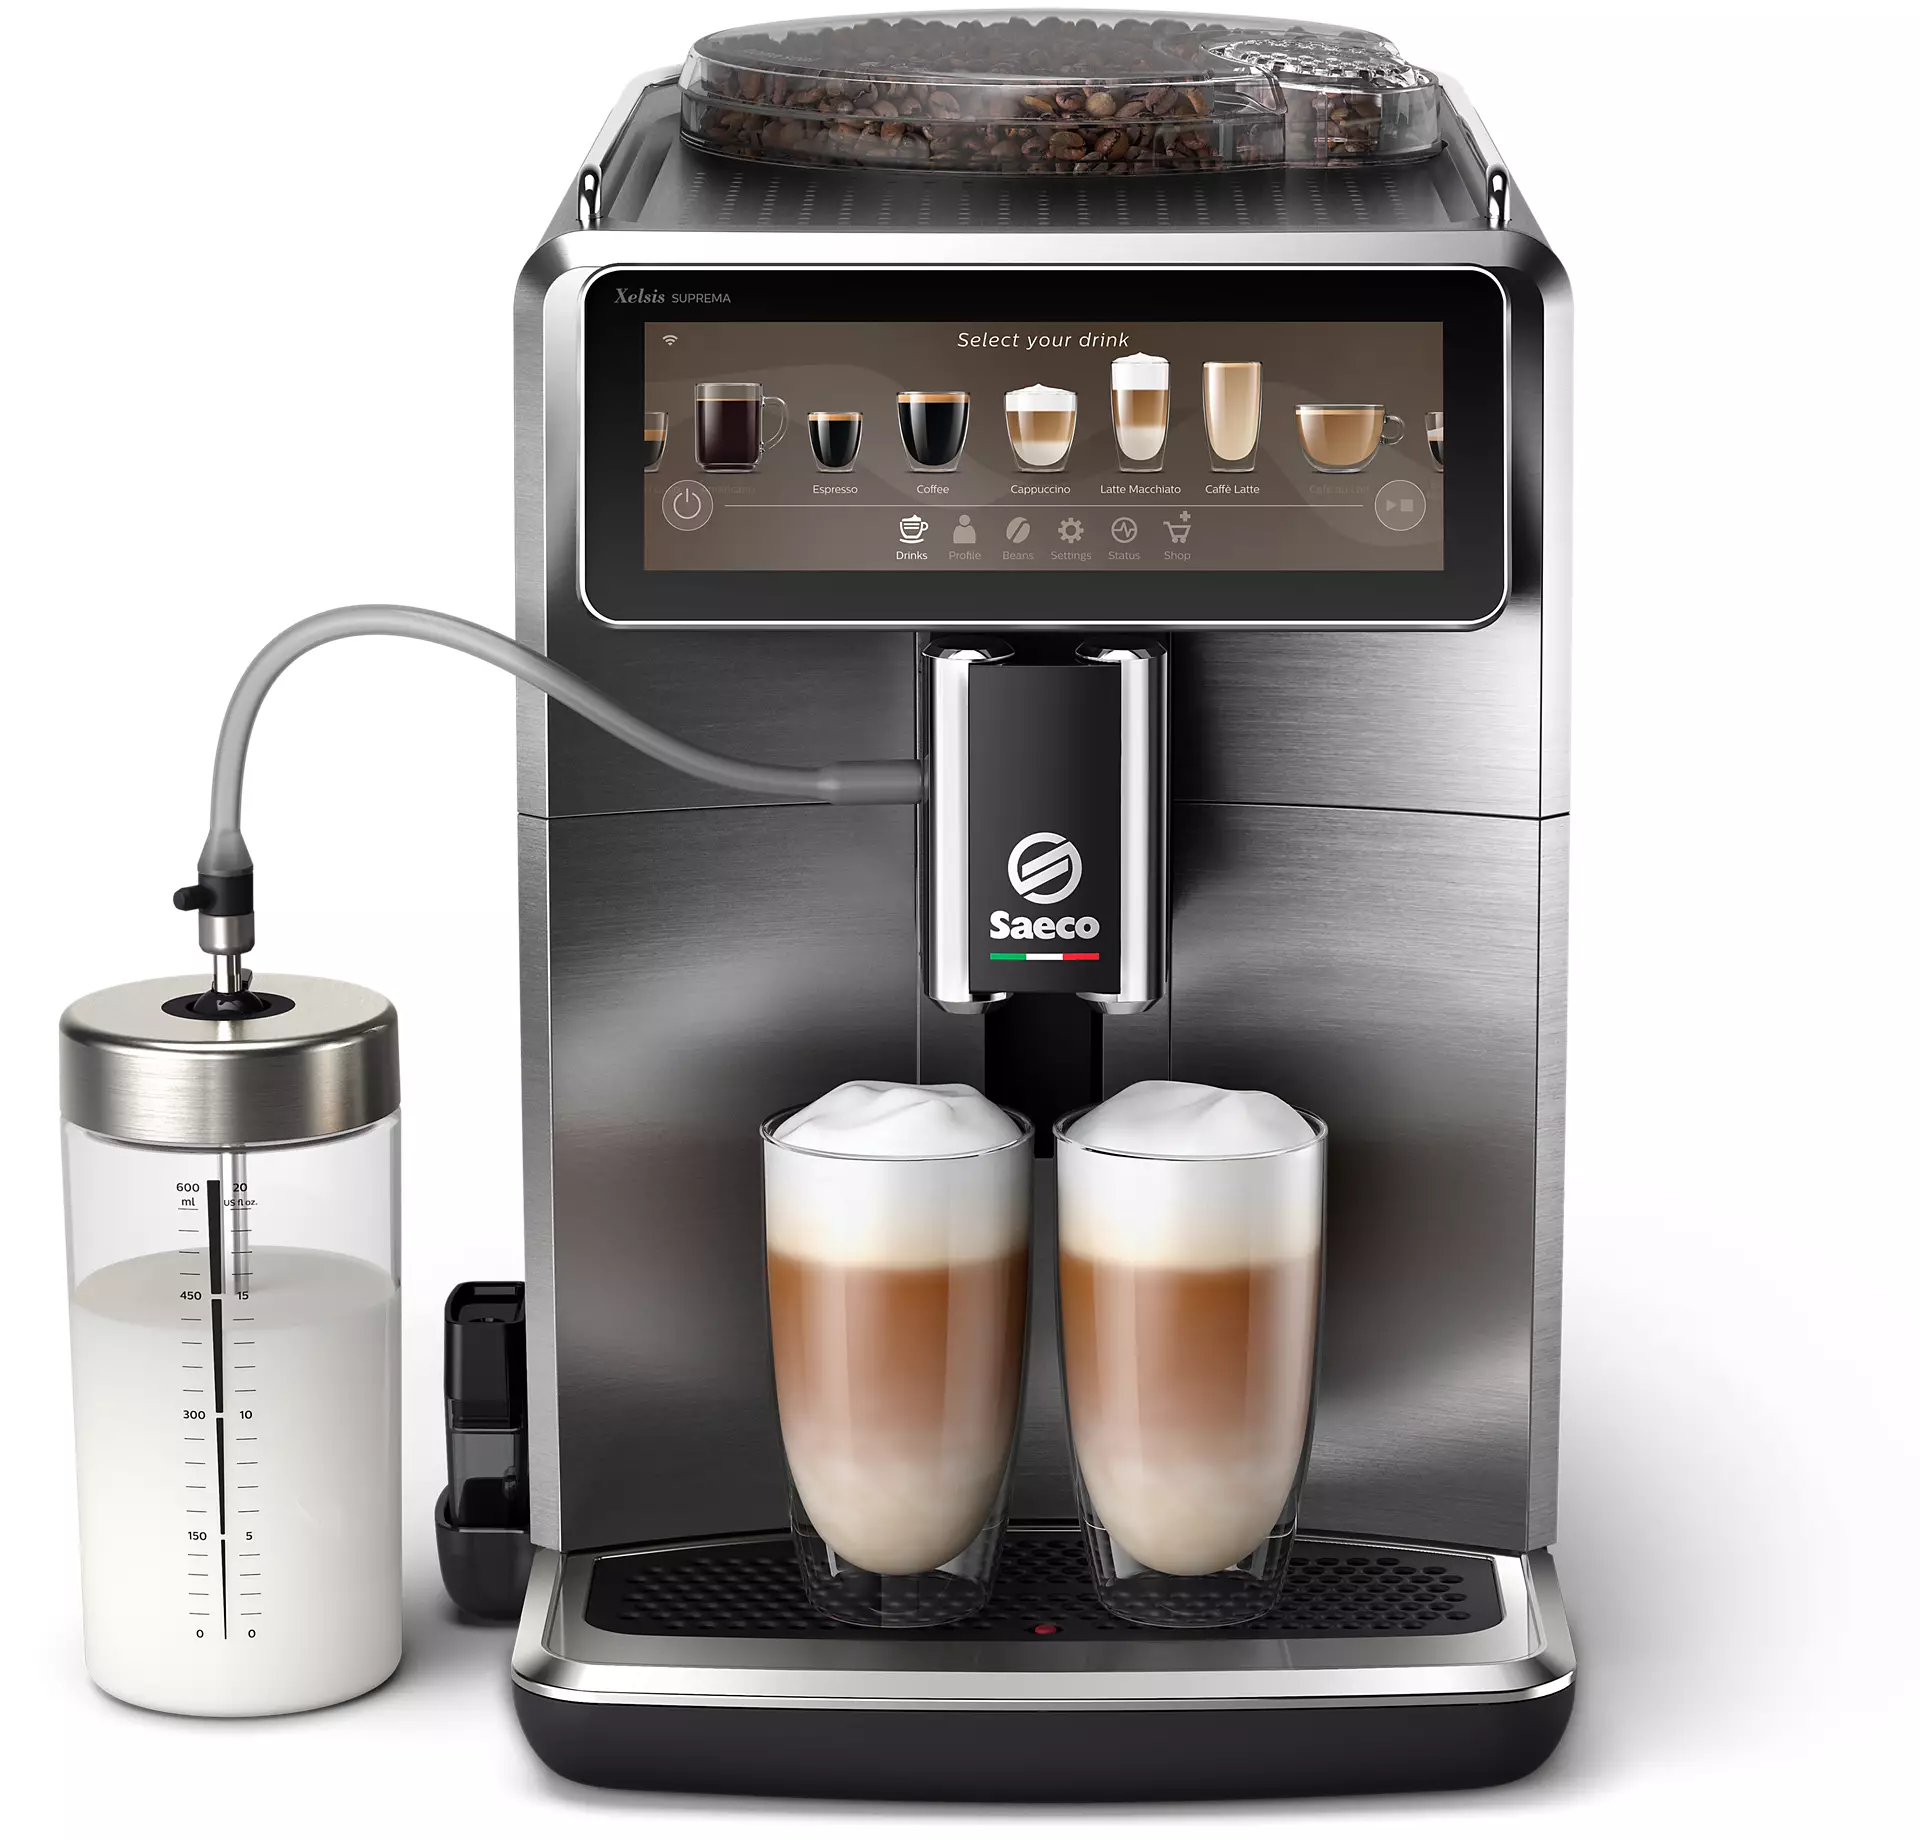 strieborný kávovar Saeco s dvomi cafe latte